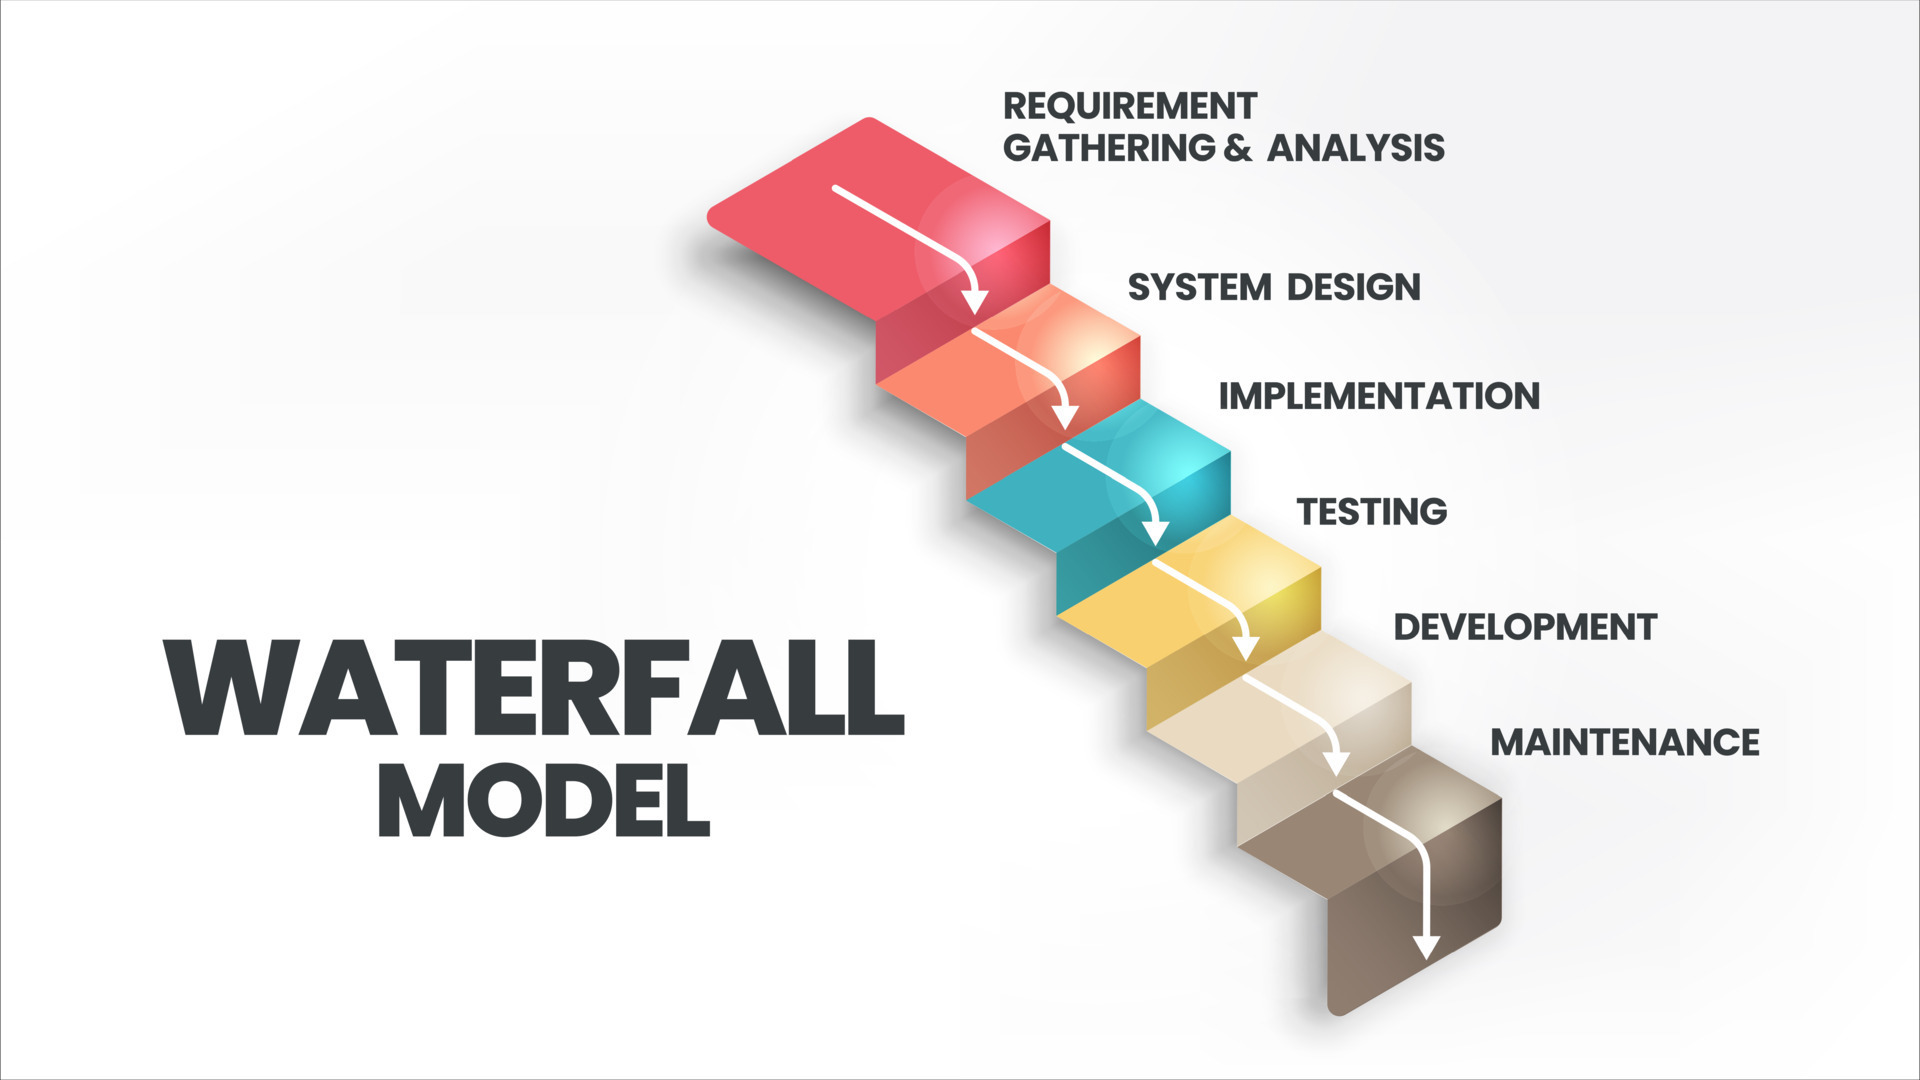 워터폴 소프트웨어 모델은 무엇인가요? 워터폴 모델의 개발 순서는 무엇인가요?